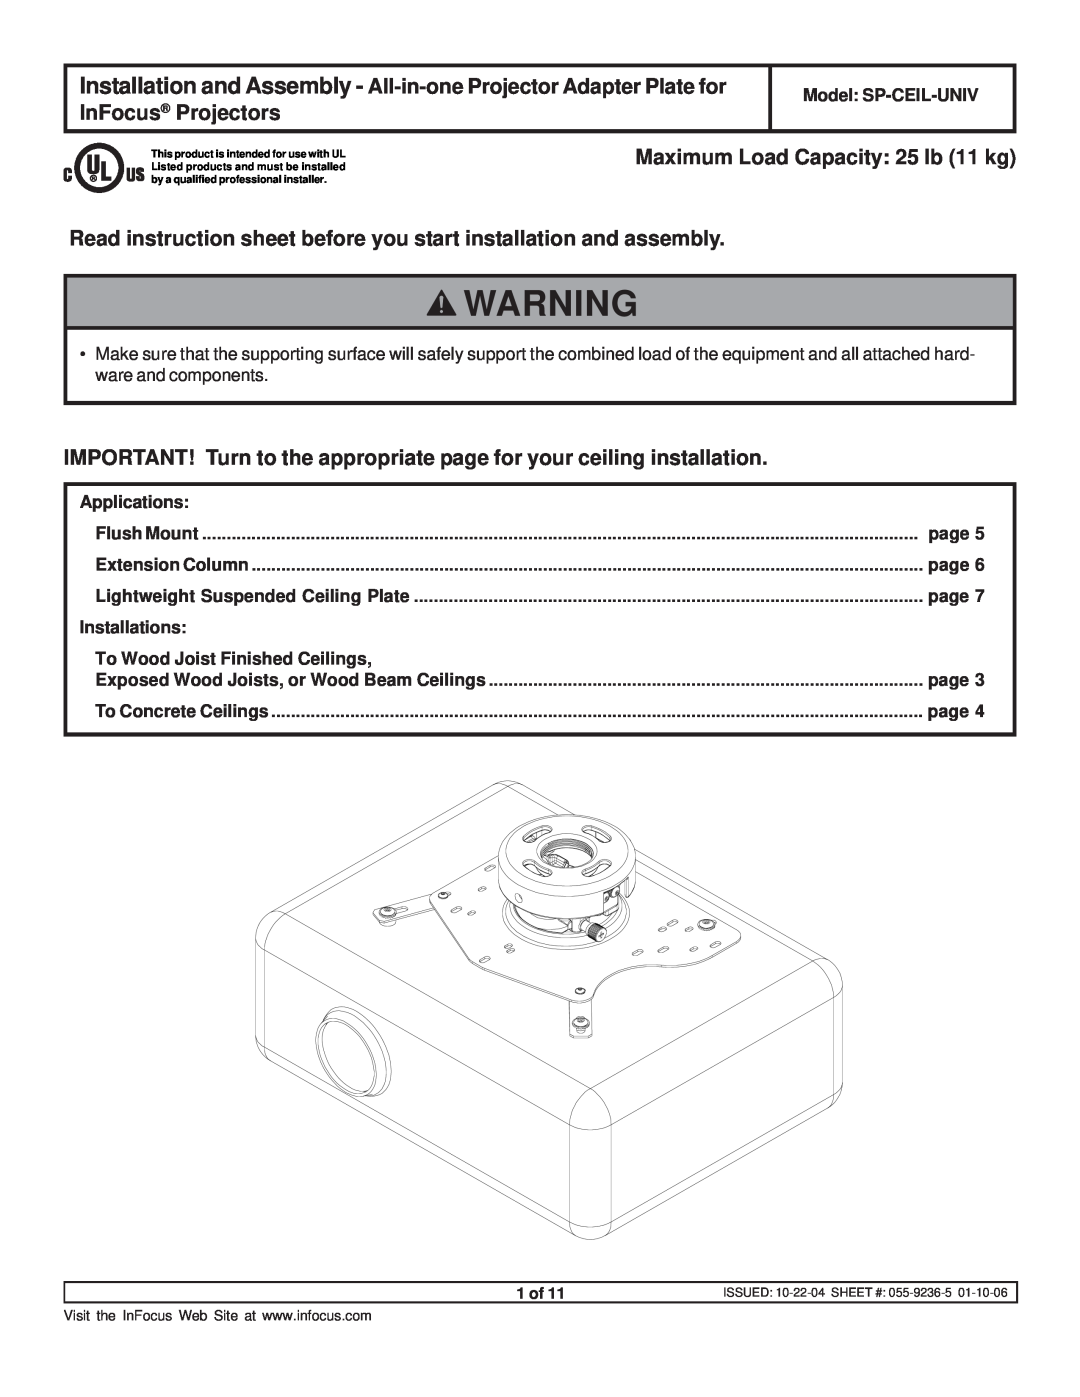 InFocus SP-CEIL-UNIV instruction sheet Maximum Load Capacity 25 lb 11 kg 